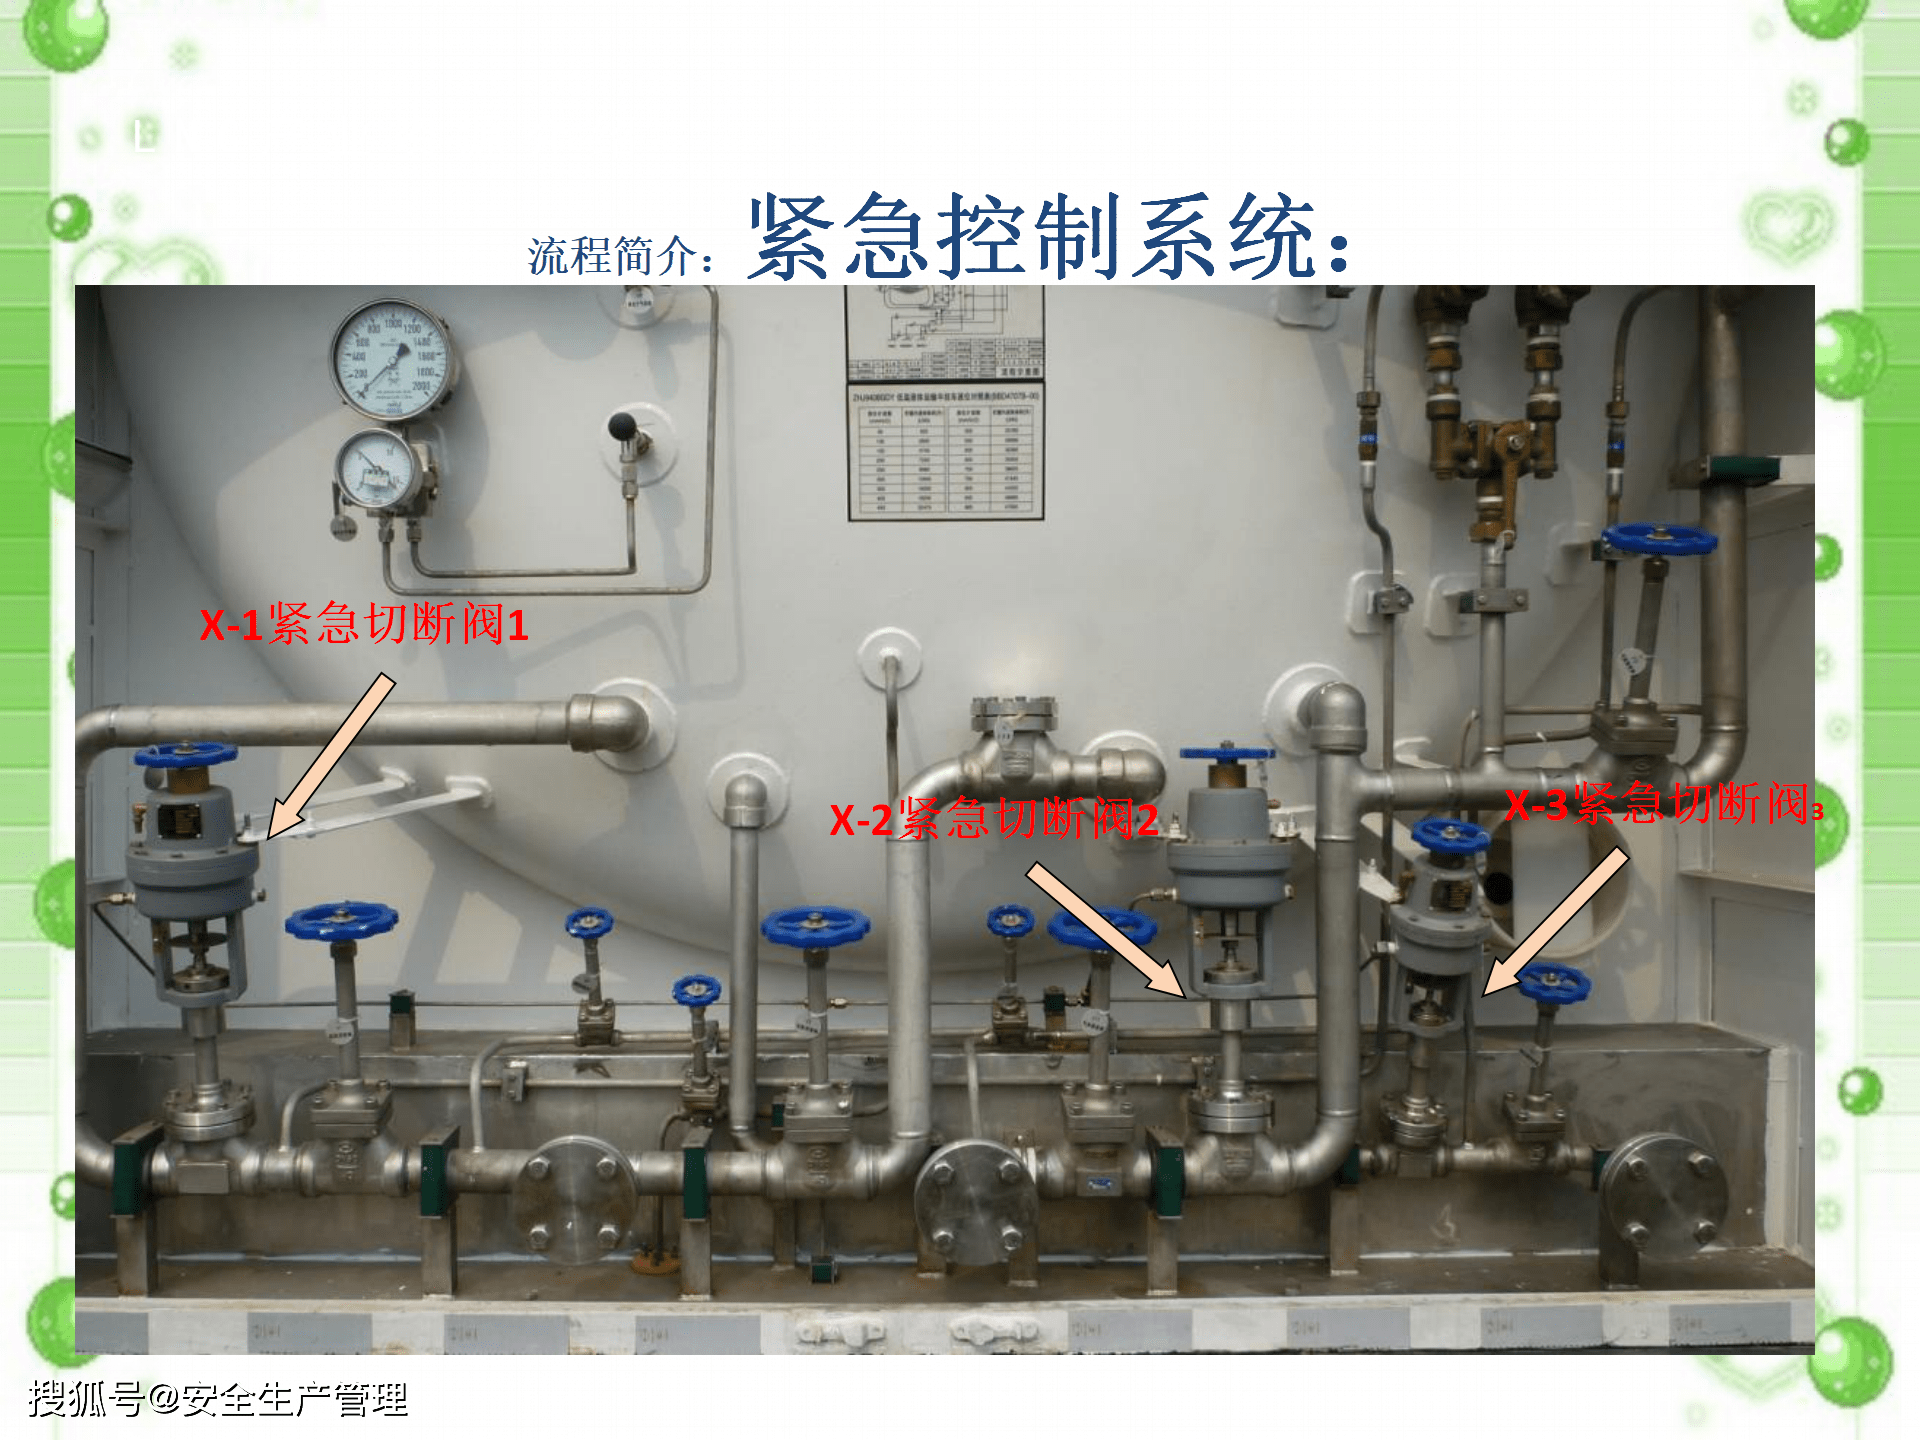 液化天然气槽车安全培训:2020年安全生产月宣讲课件(七十五)